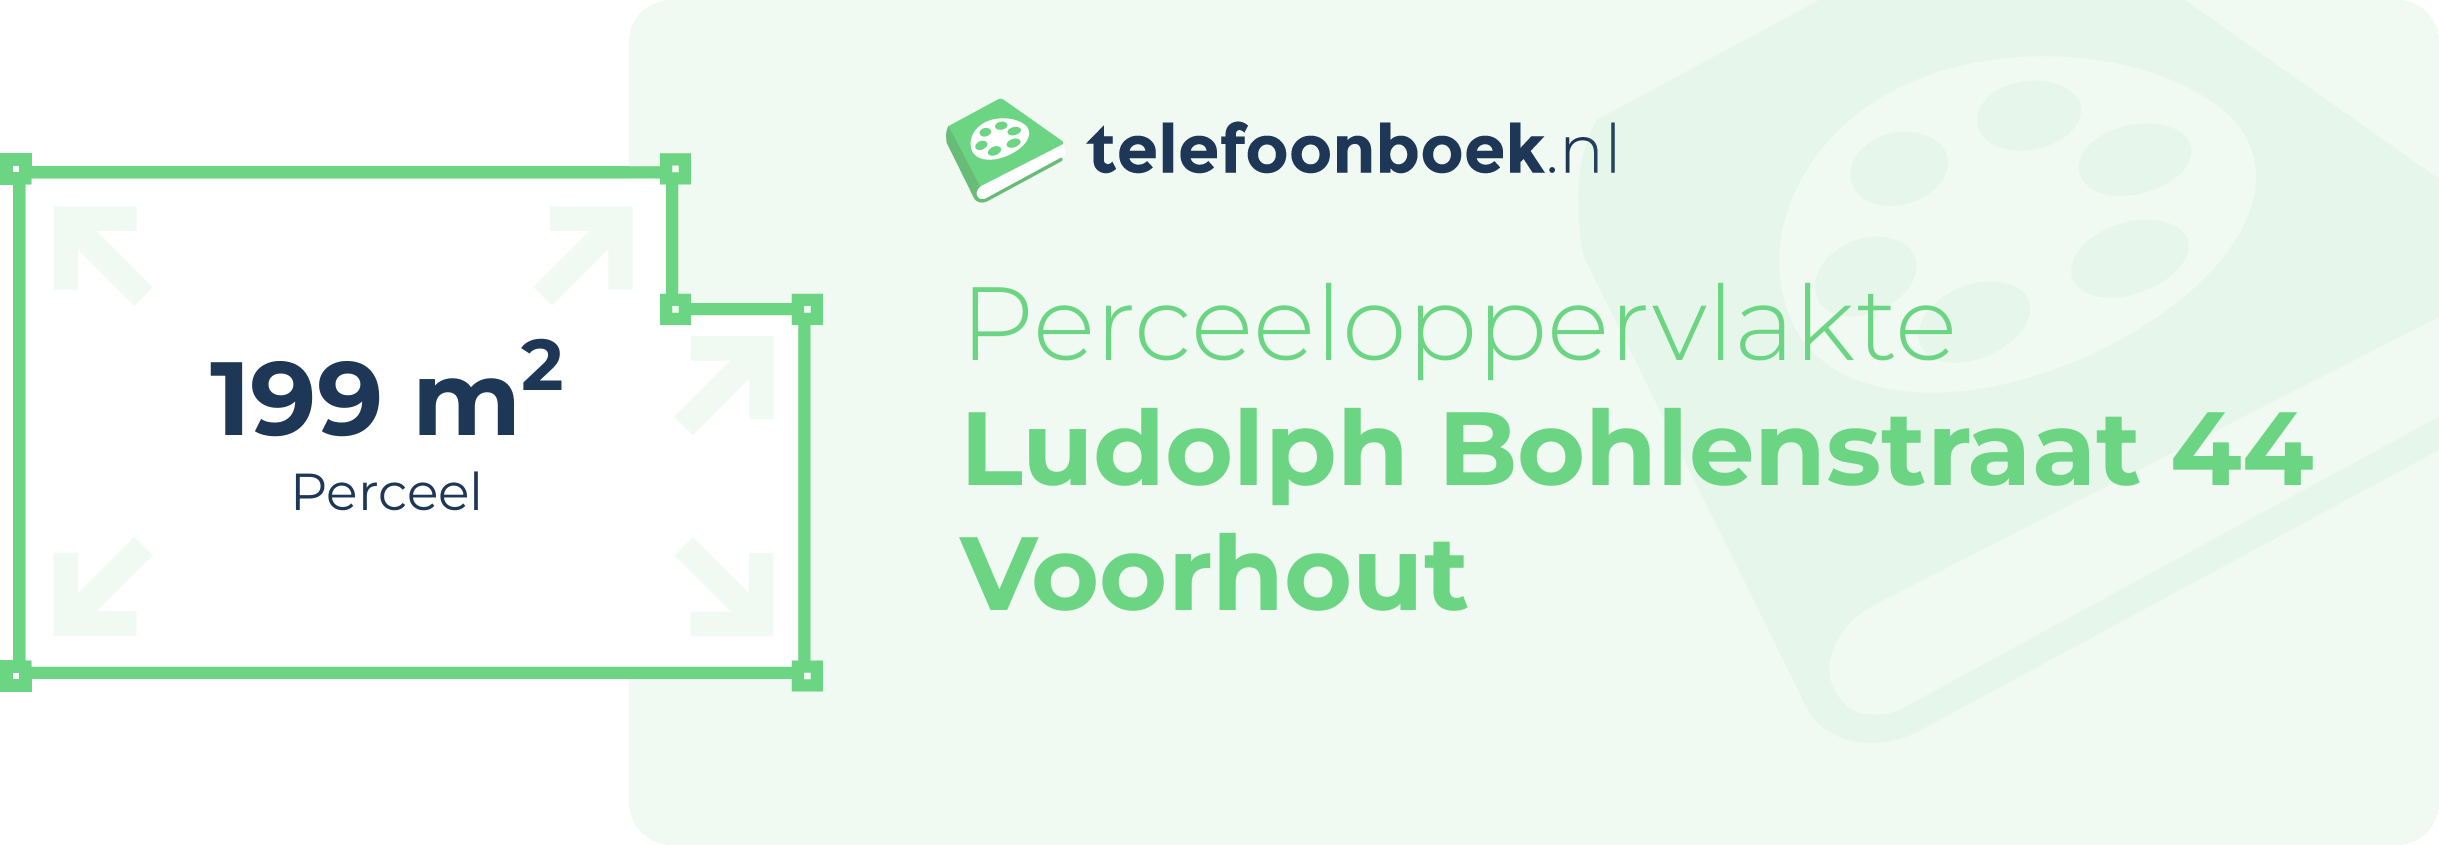 Perceeloppervlakte Ludolph Bohlenstraat 44 Voorhout